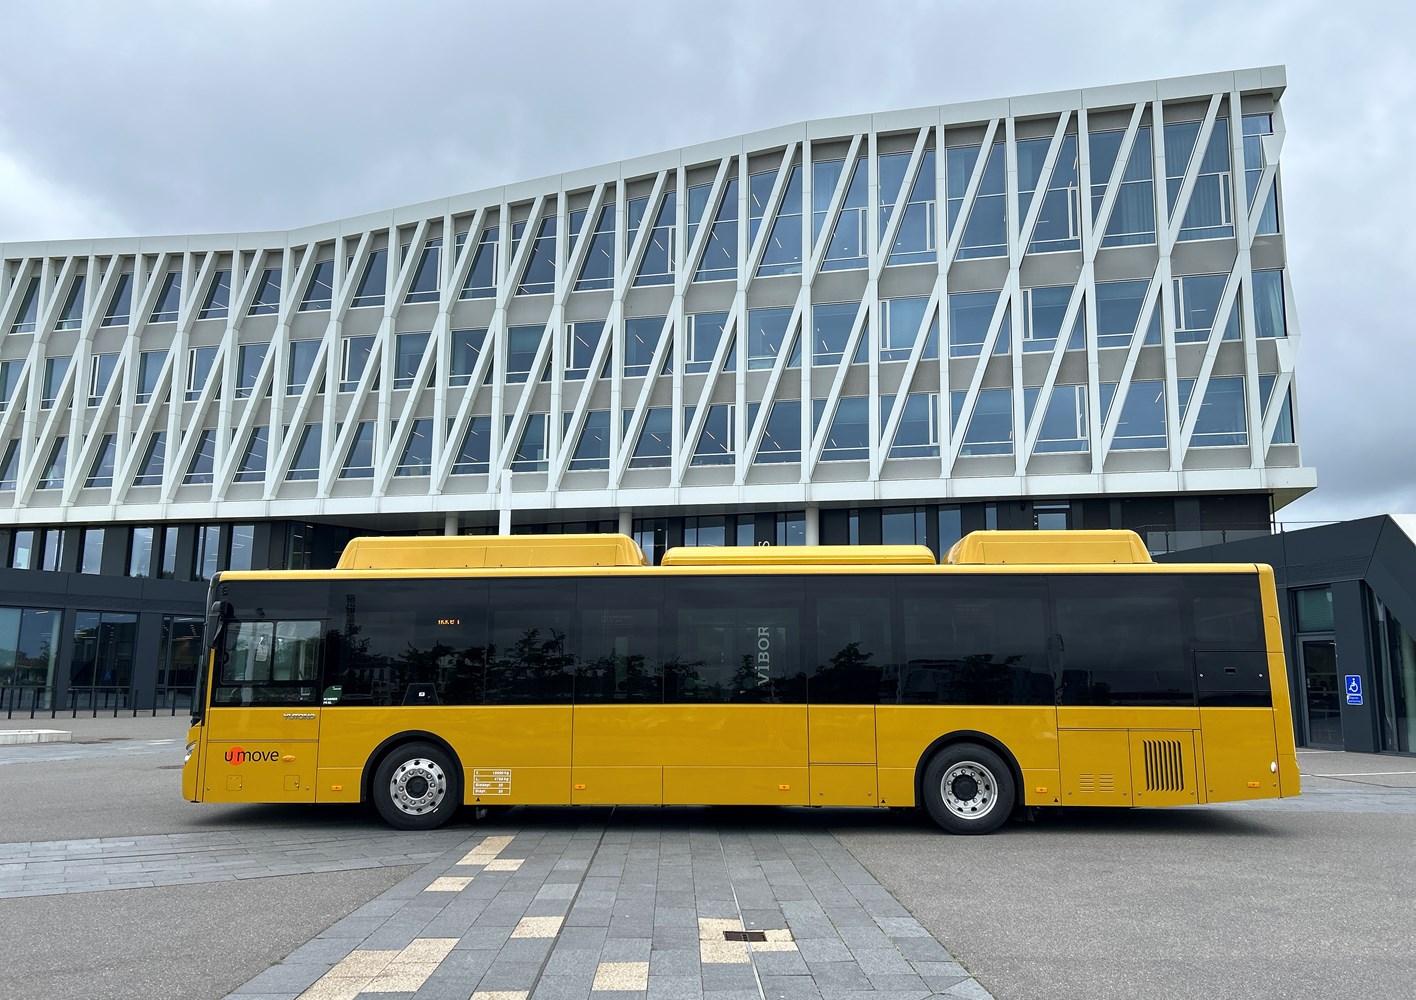 Søndag den 30. juni markeres overgangen til en ny busplan og overgang til el-busser i Viborg Kommune. Foto: Lene Bækgaard Rasmussen